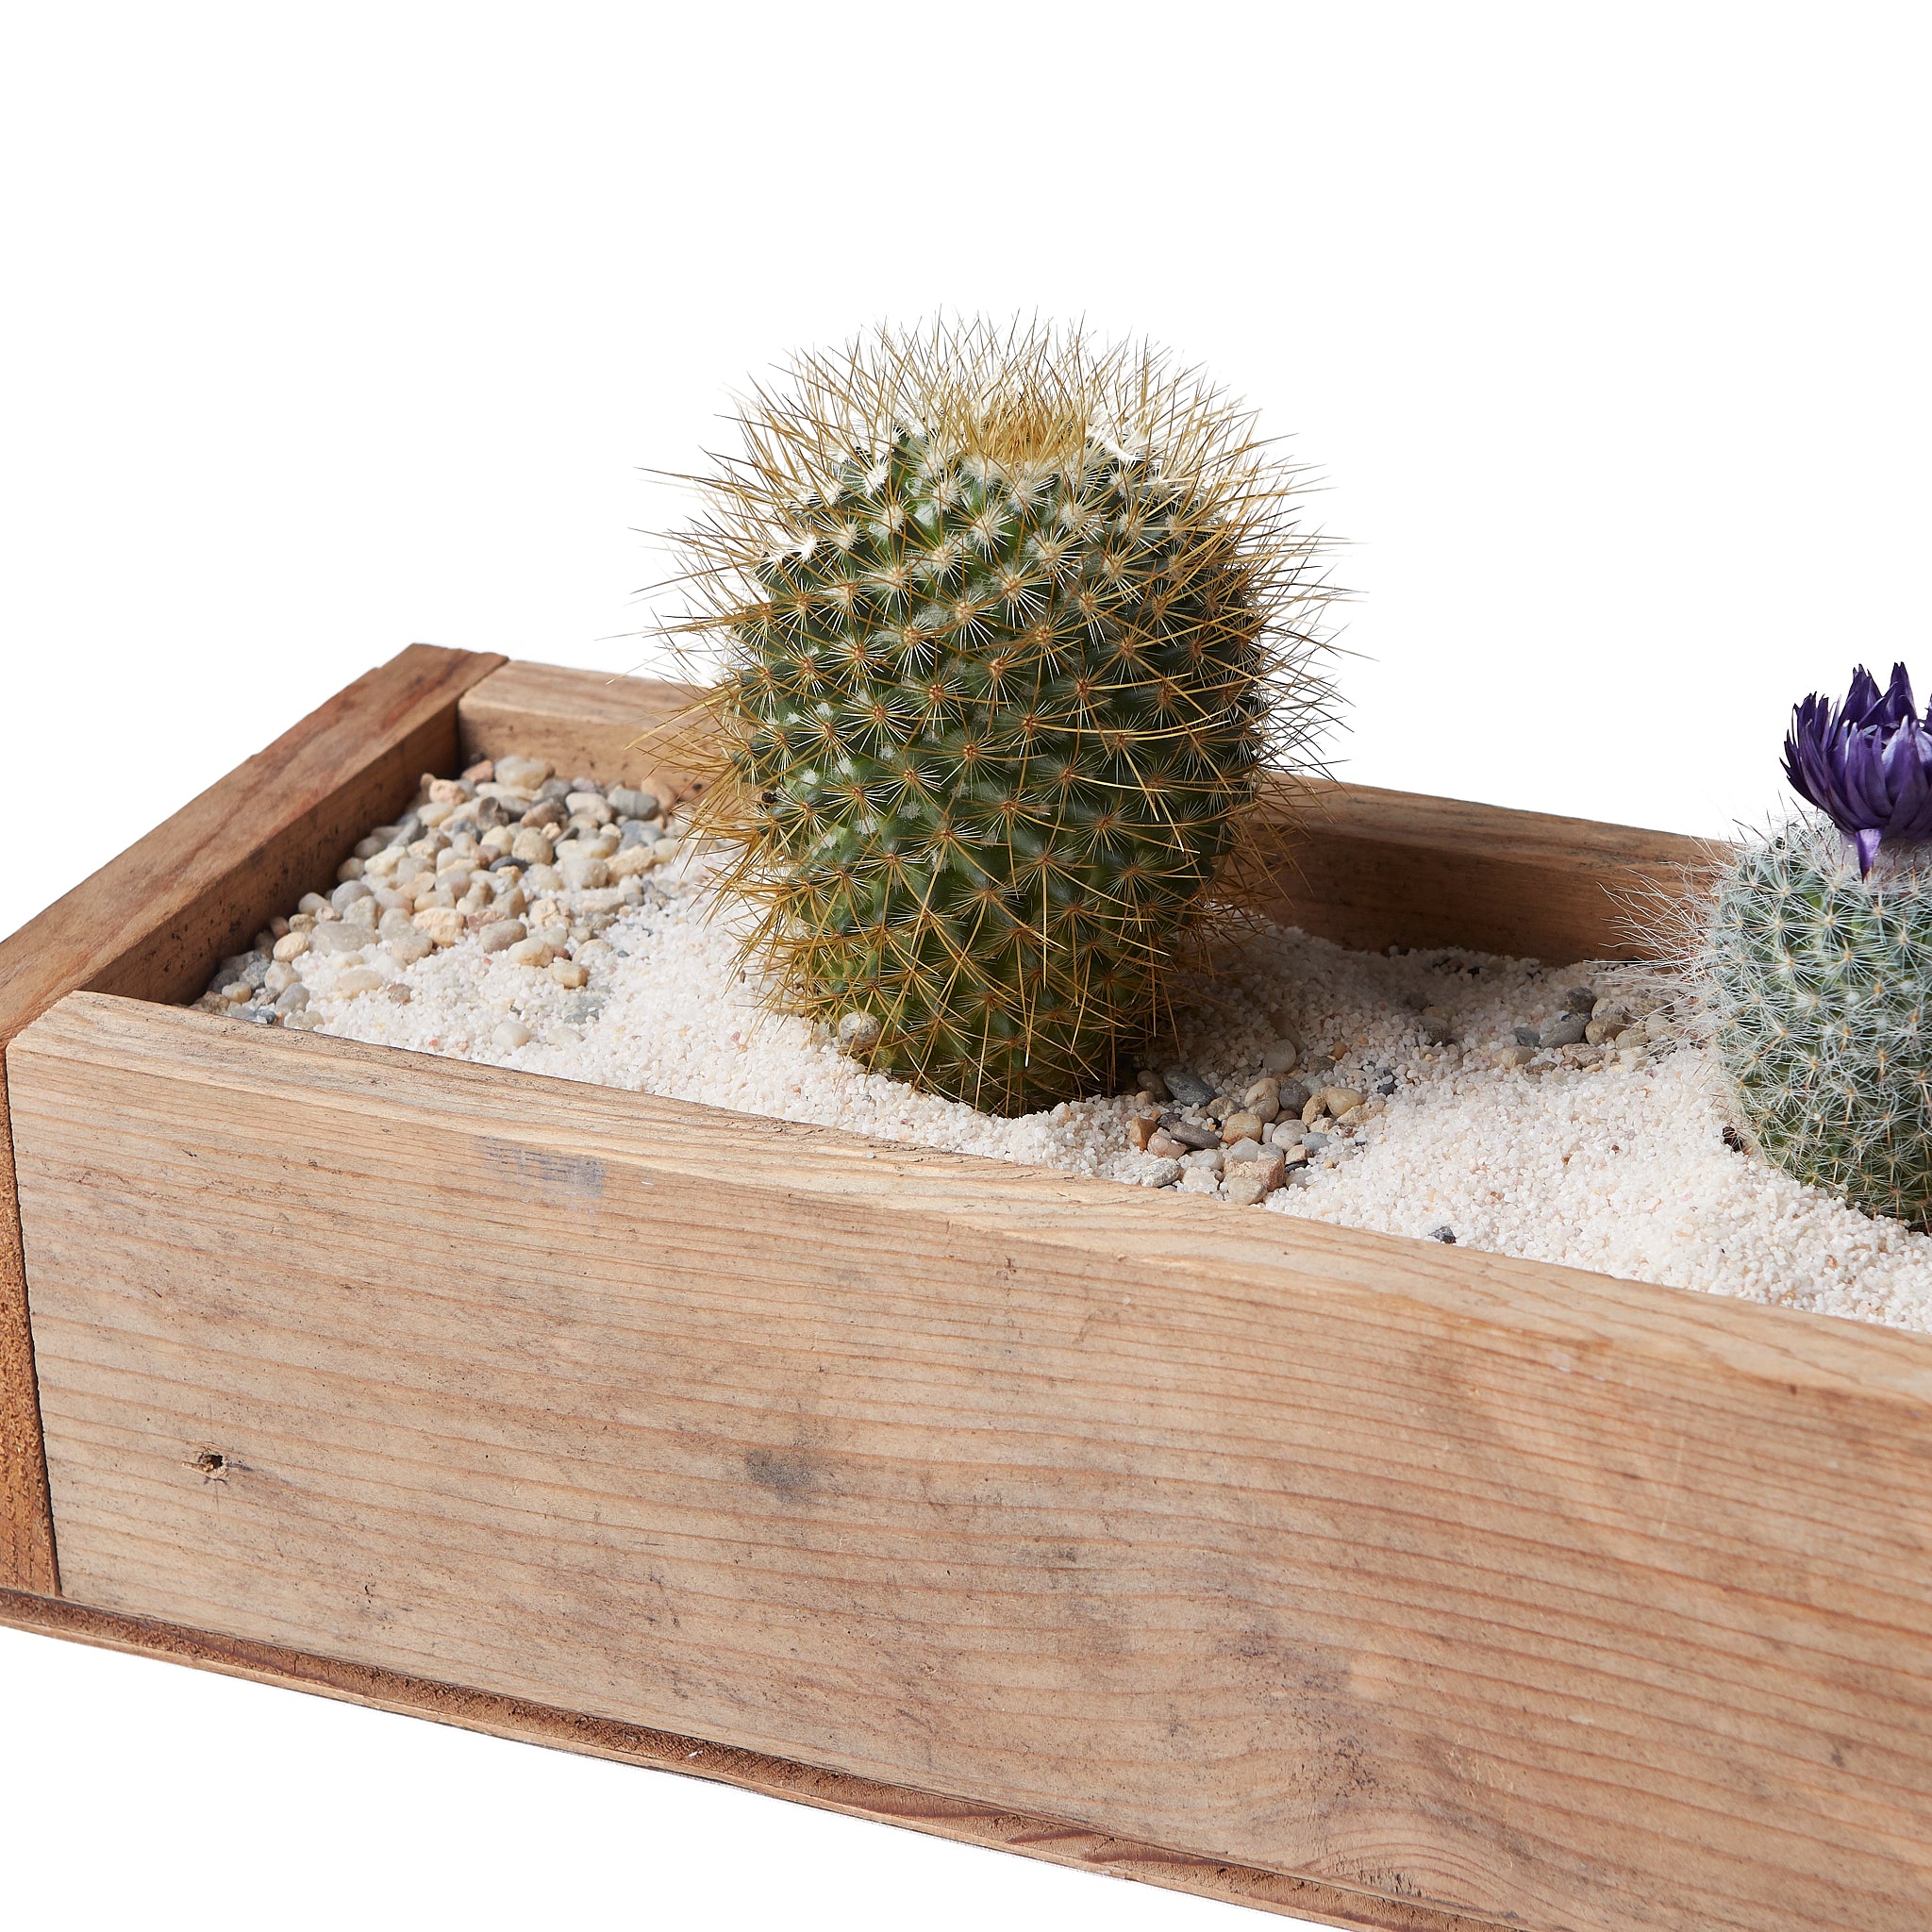 Cactus Plant Care